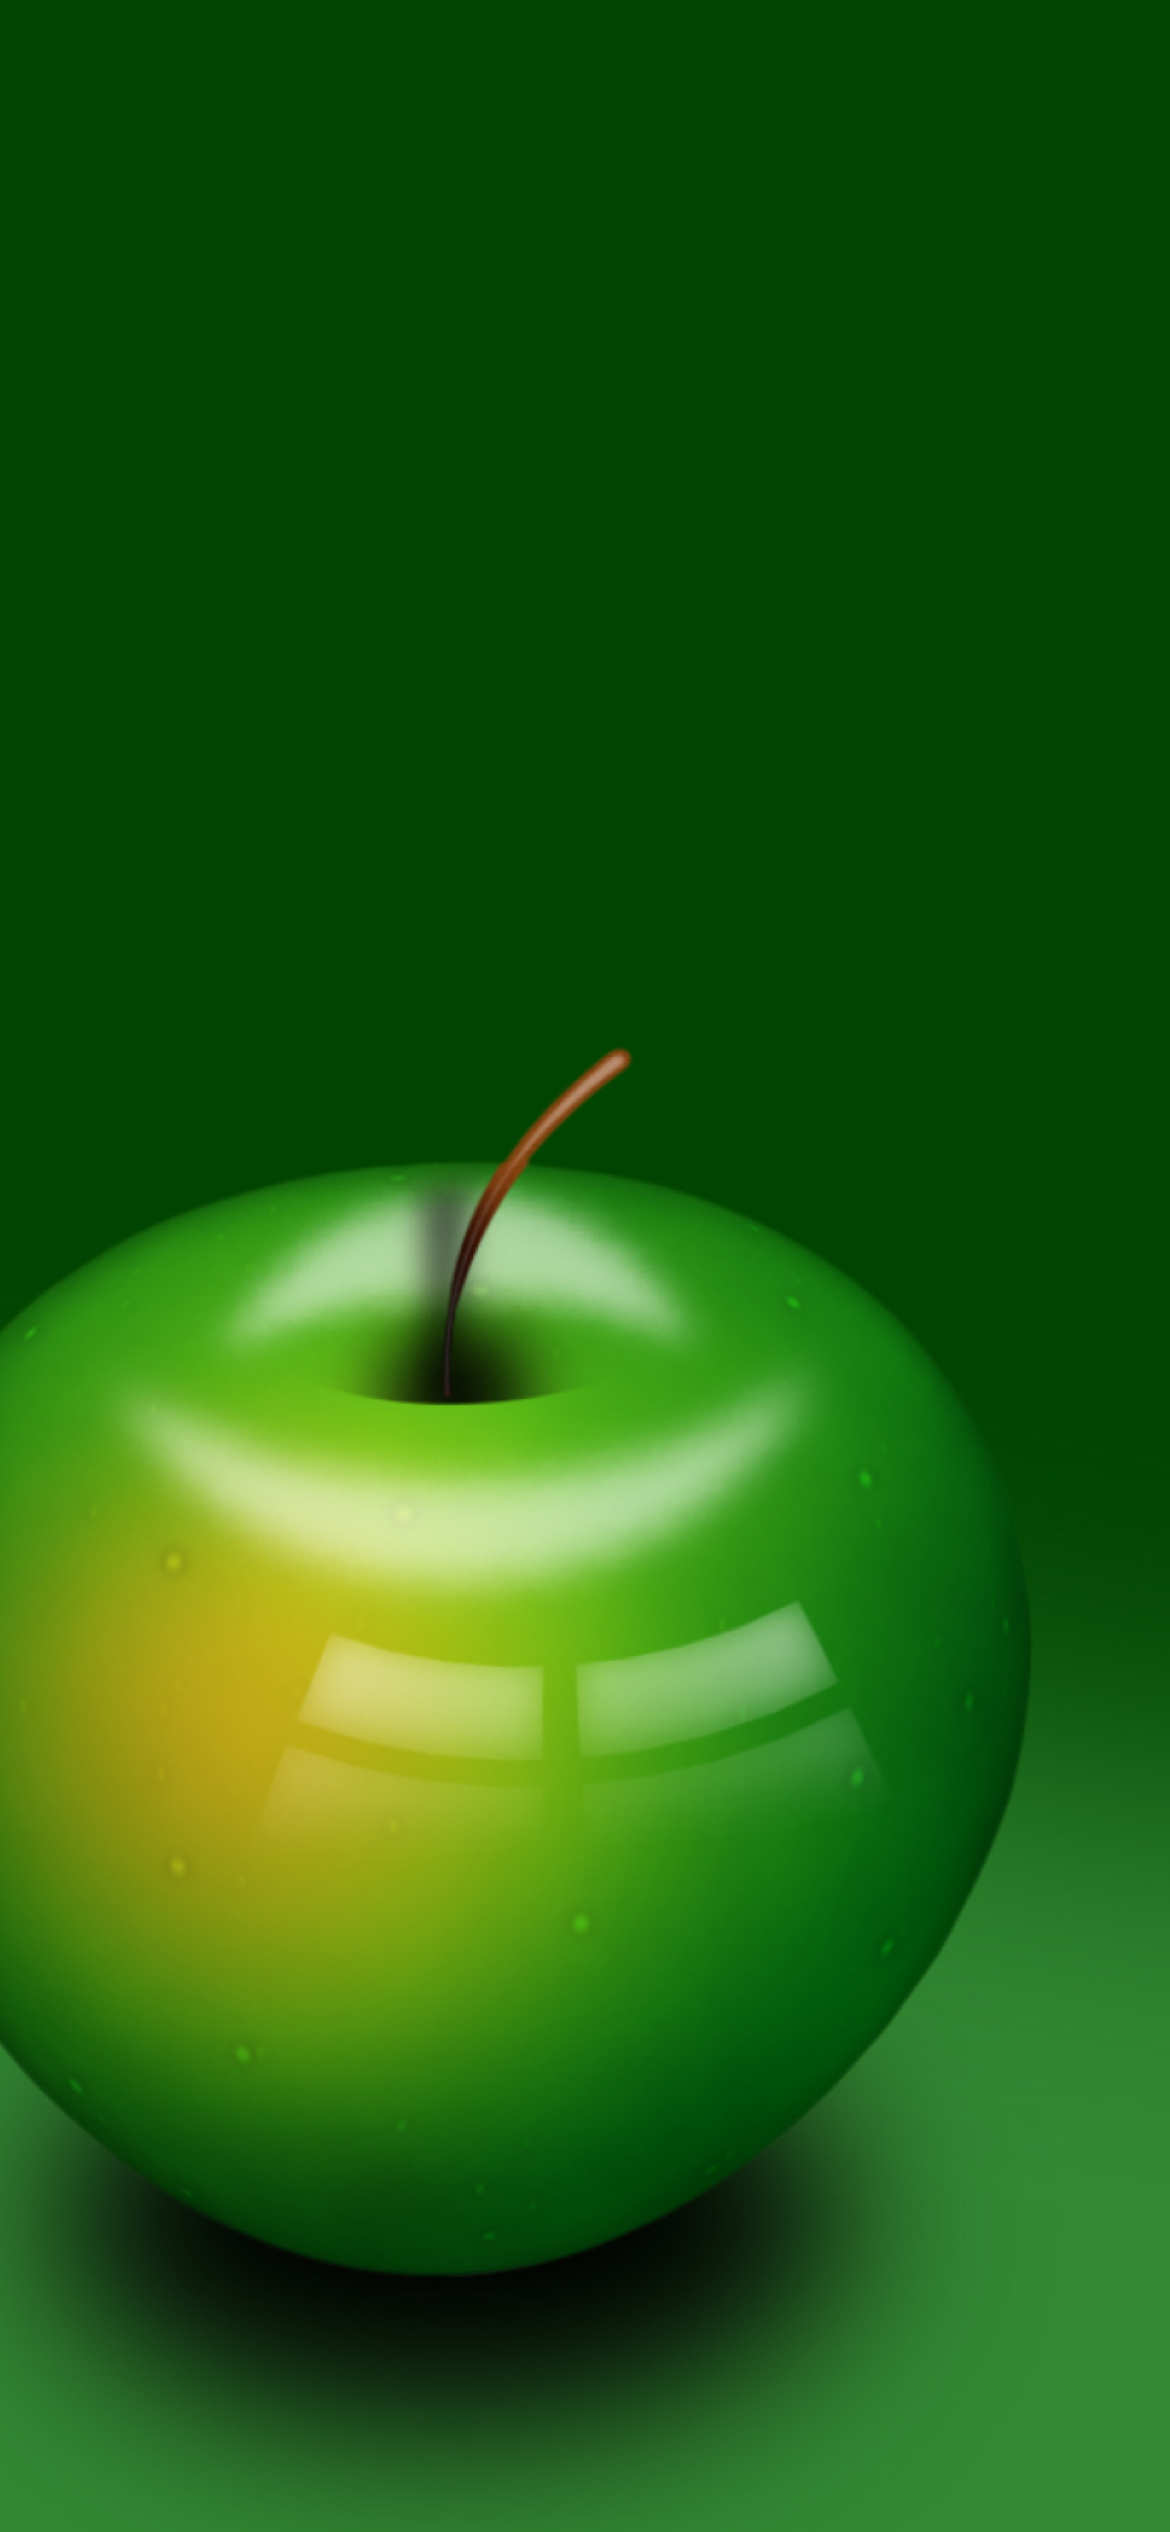 Обои Green Apple 1170x2532